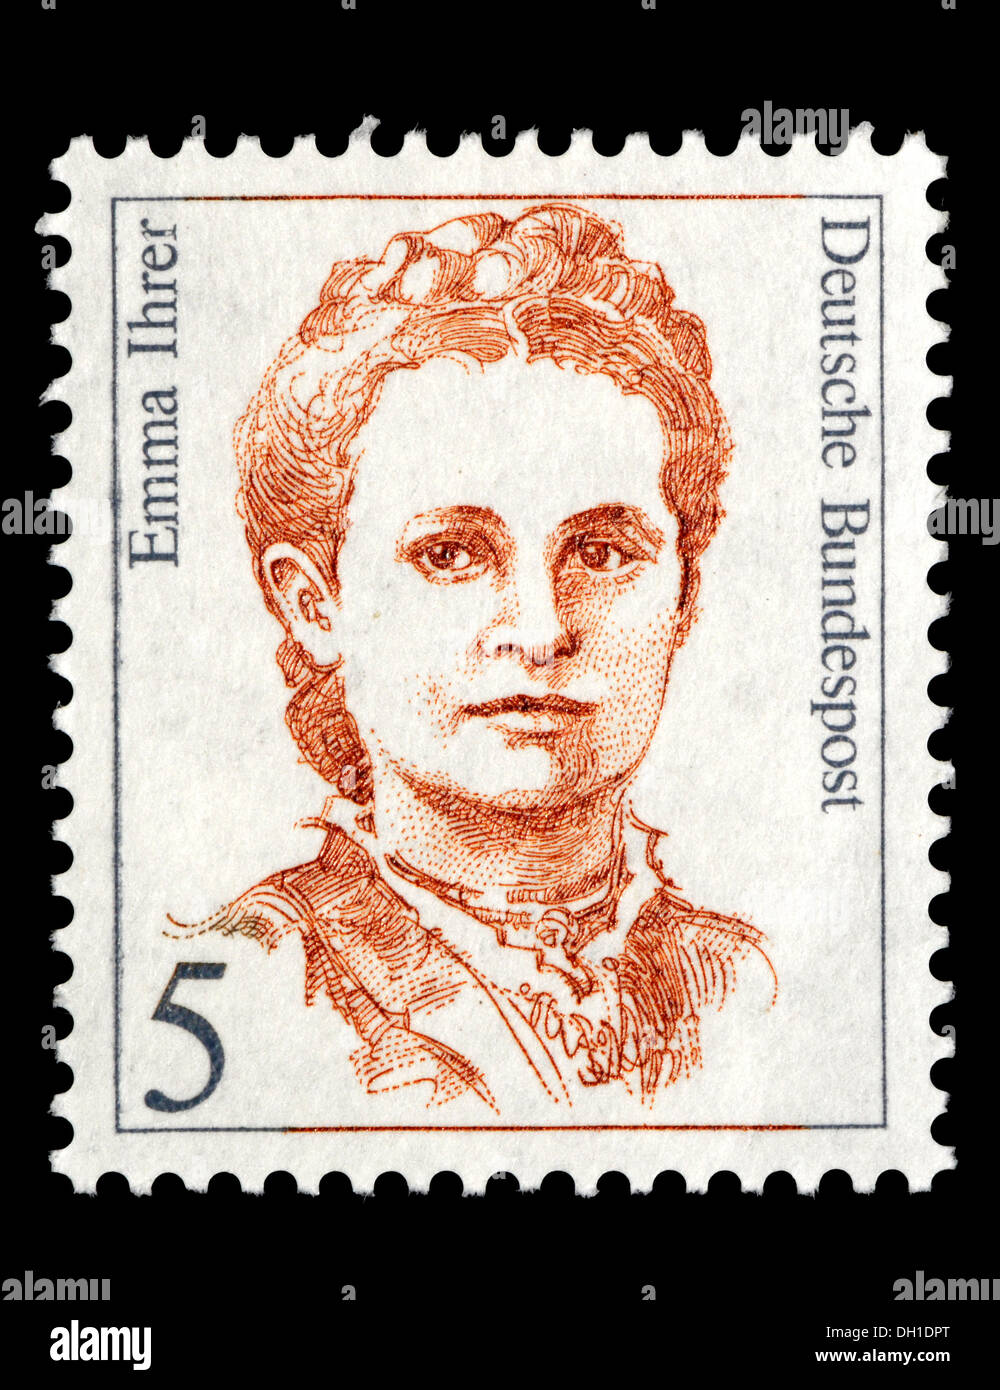 Ritratto di Emma Ihrer (1857-1911: uomo politico tedesco e sindacalista) Tedesco sul francobollo. Foto Stock